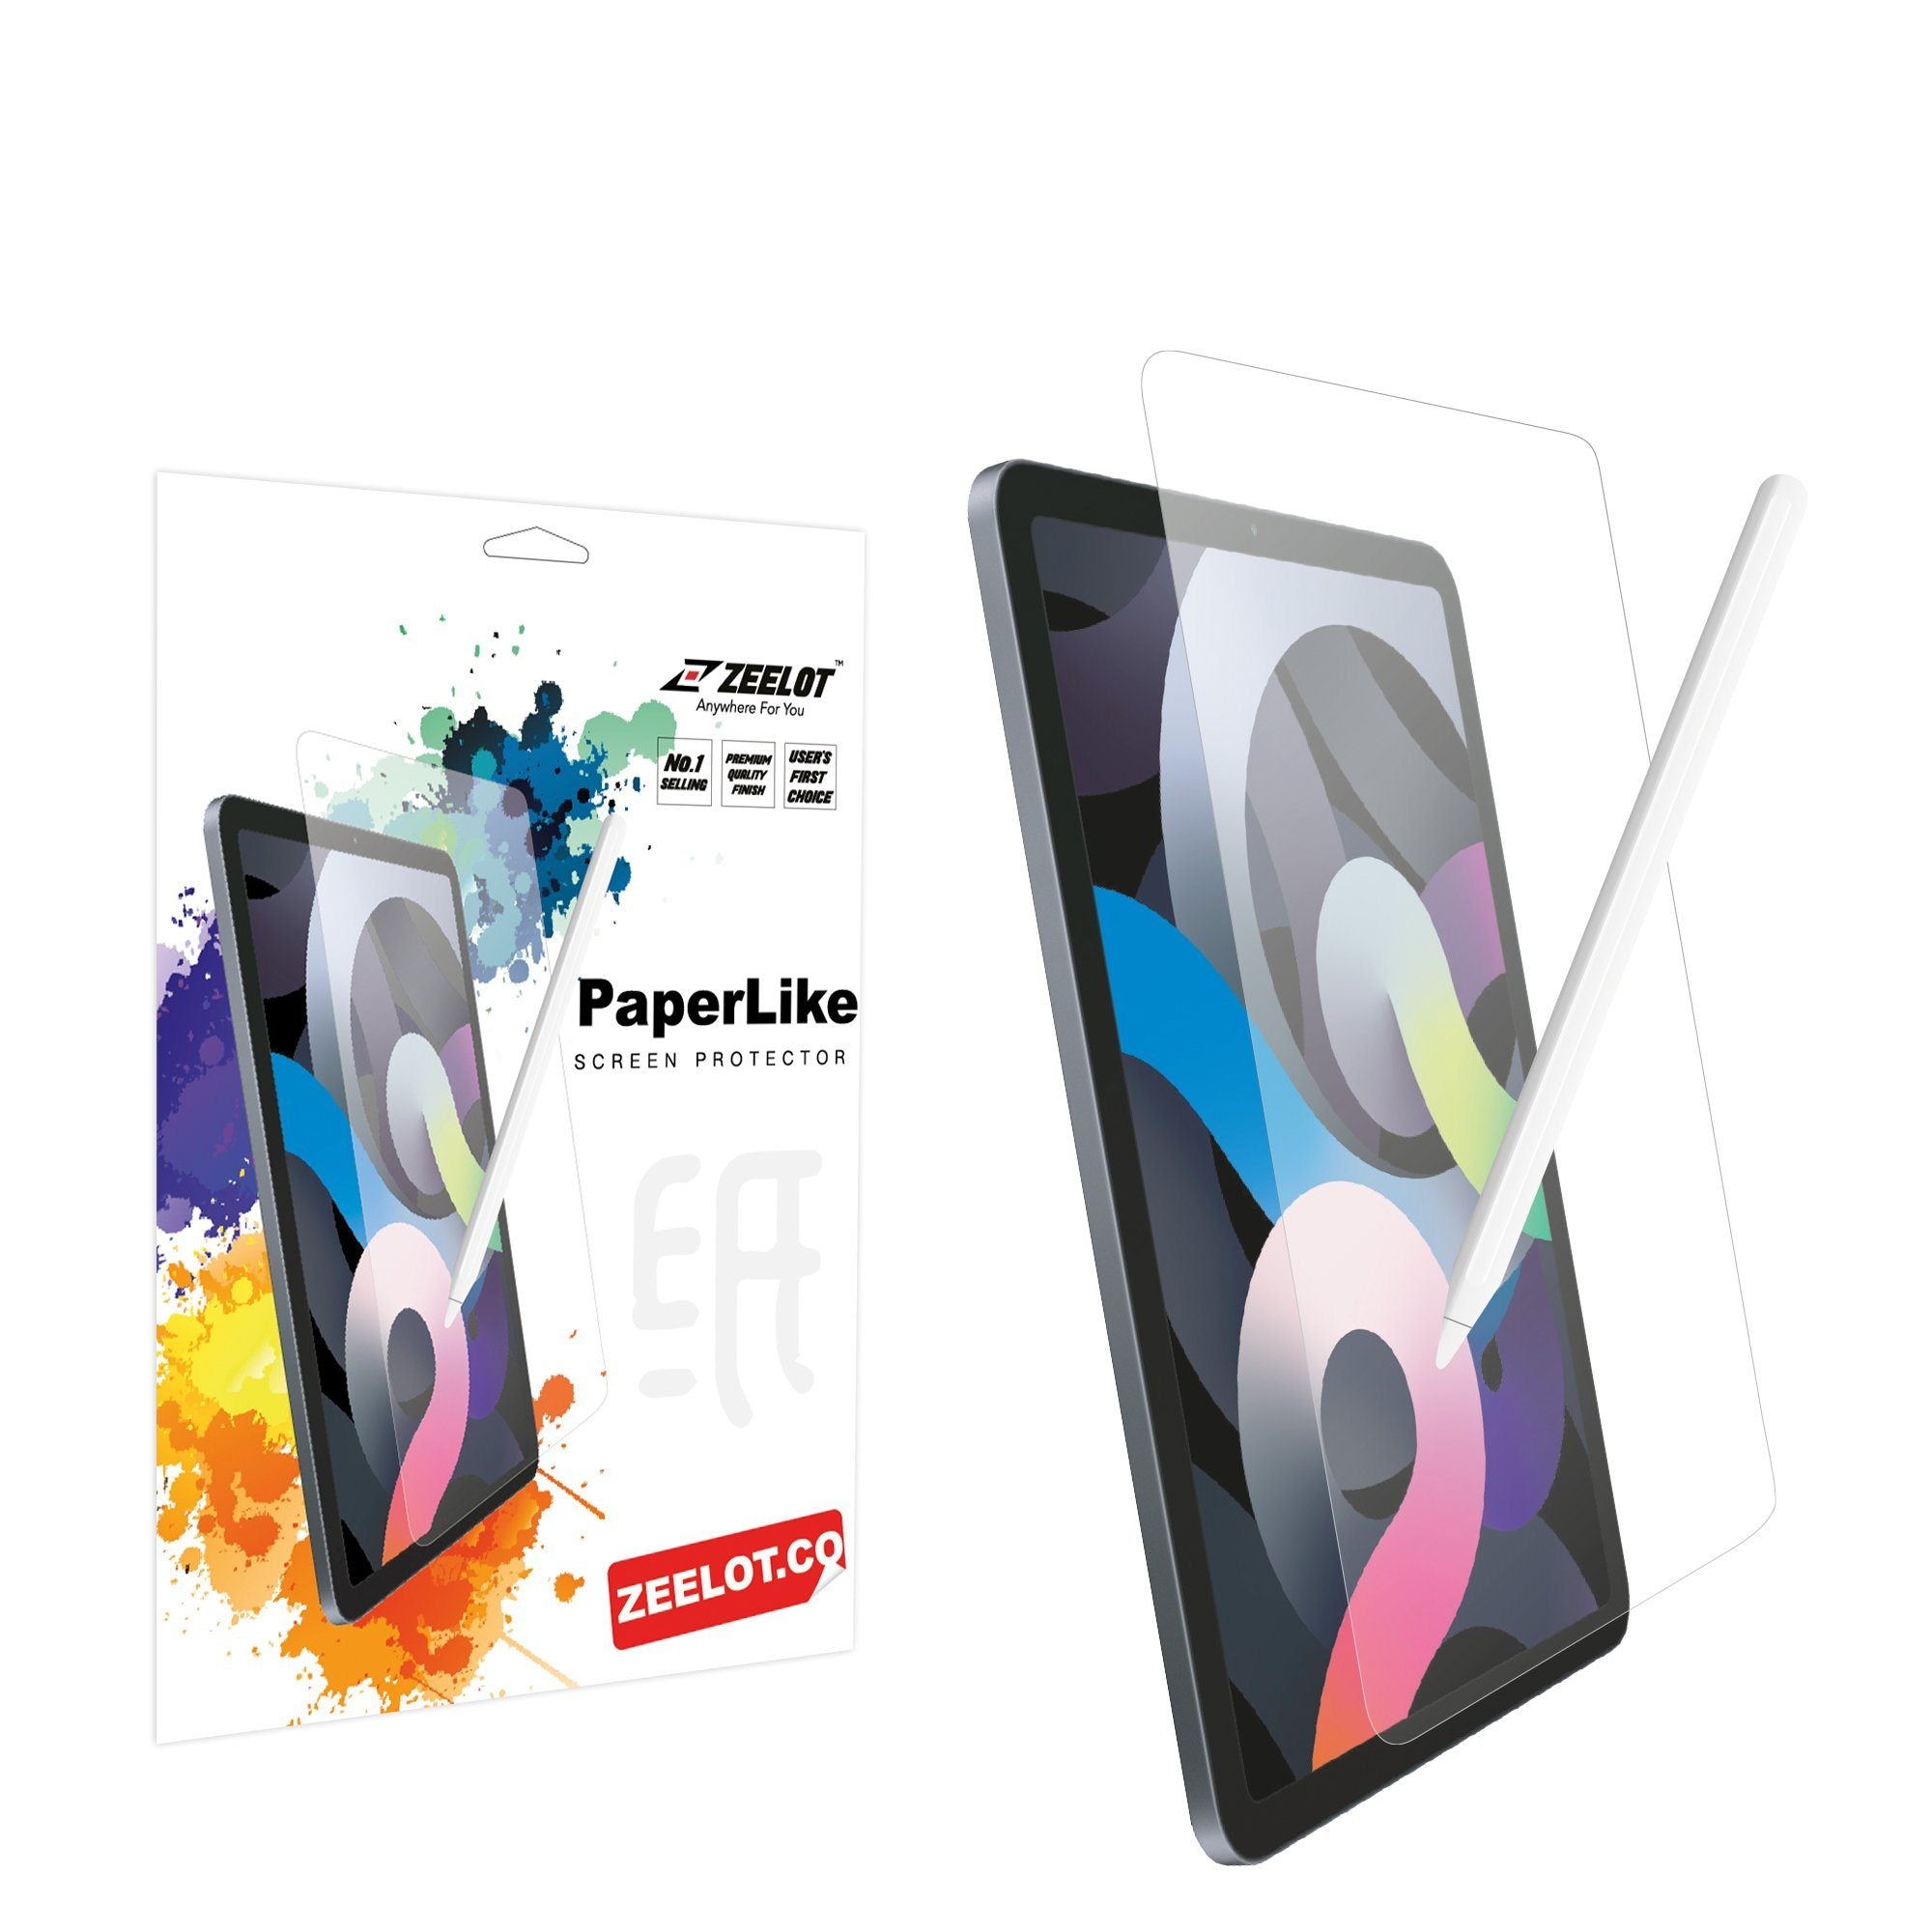 ZEELOT Paper Like Screen Protector for iPad 10.2" (2020/2019) Default Zeelot 